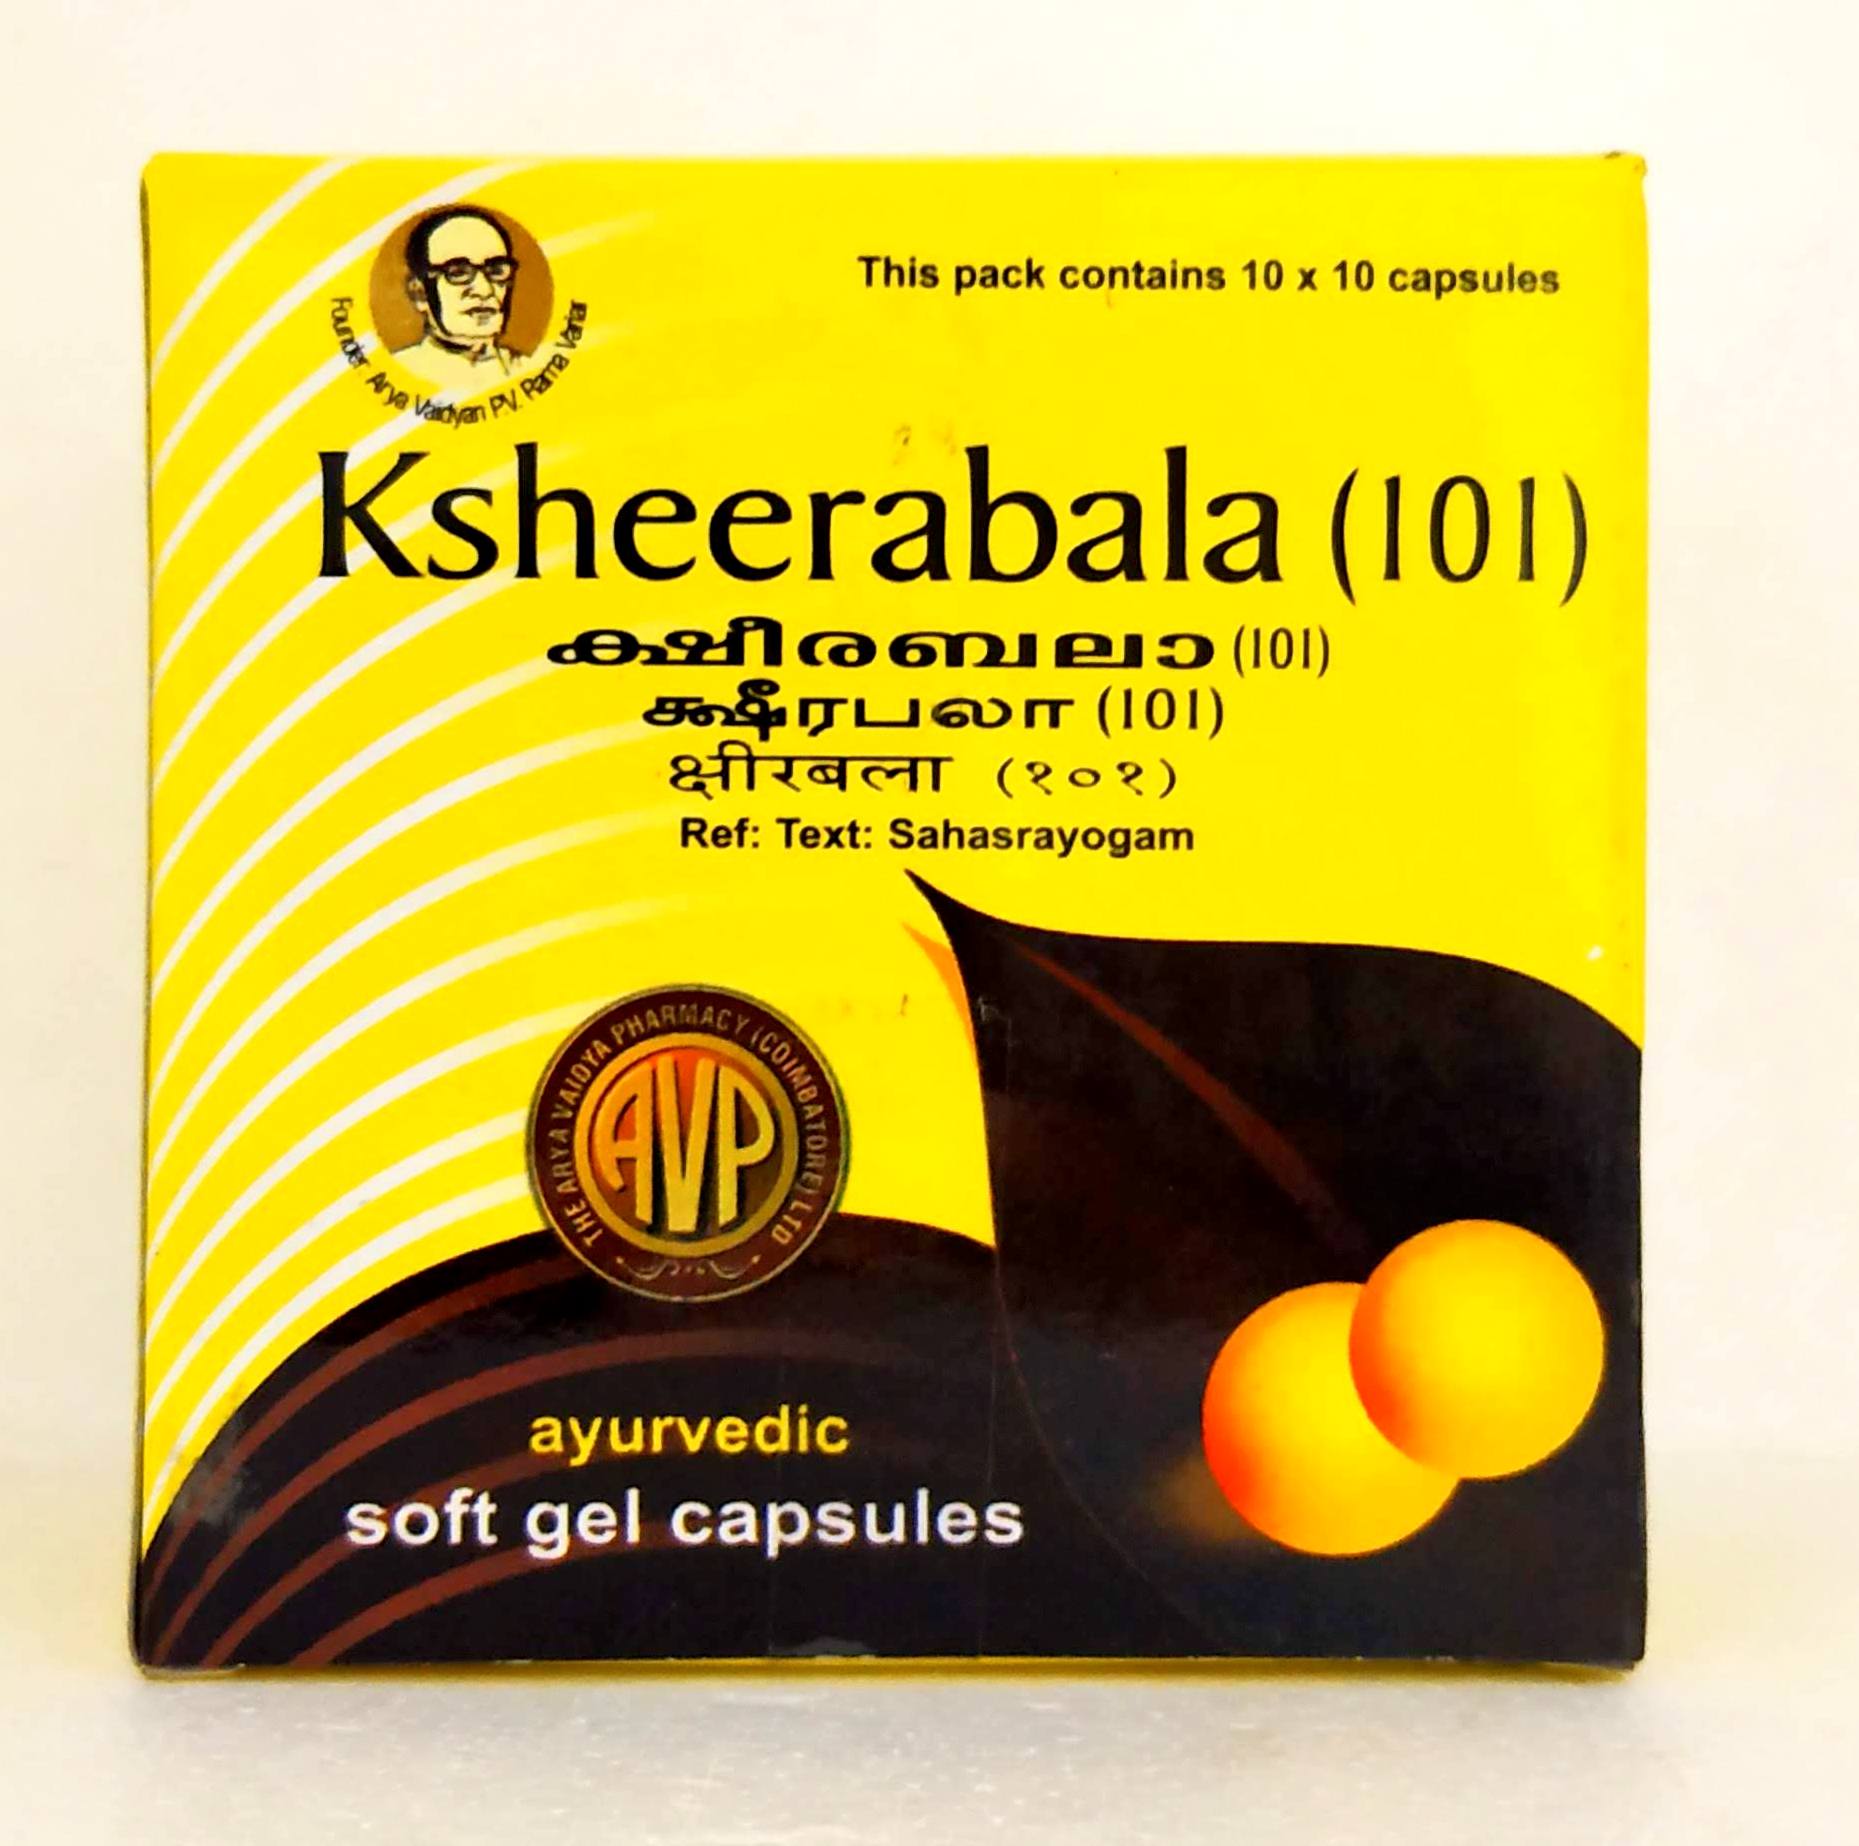 Shop Ksheerabala 101 Capsules - 10Capsules at price 67.00 from AVP Online - Ayush Care